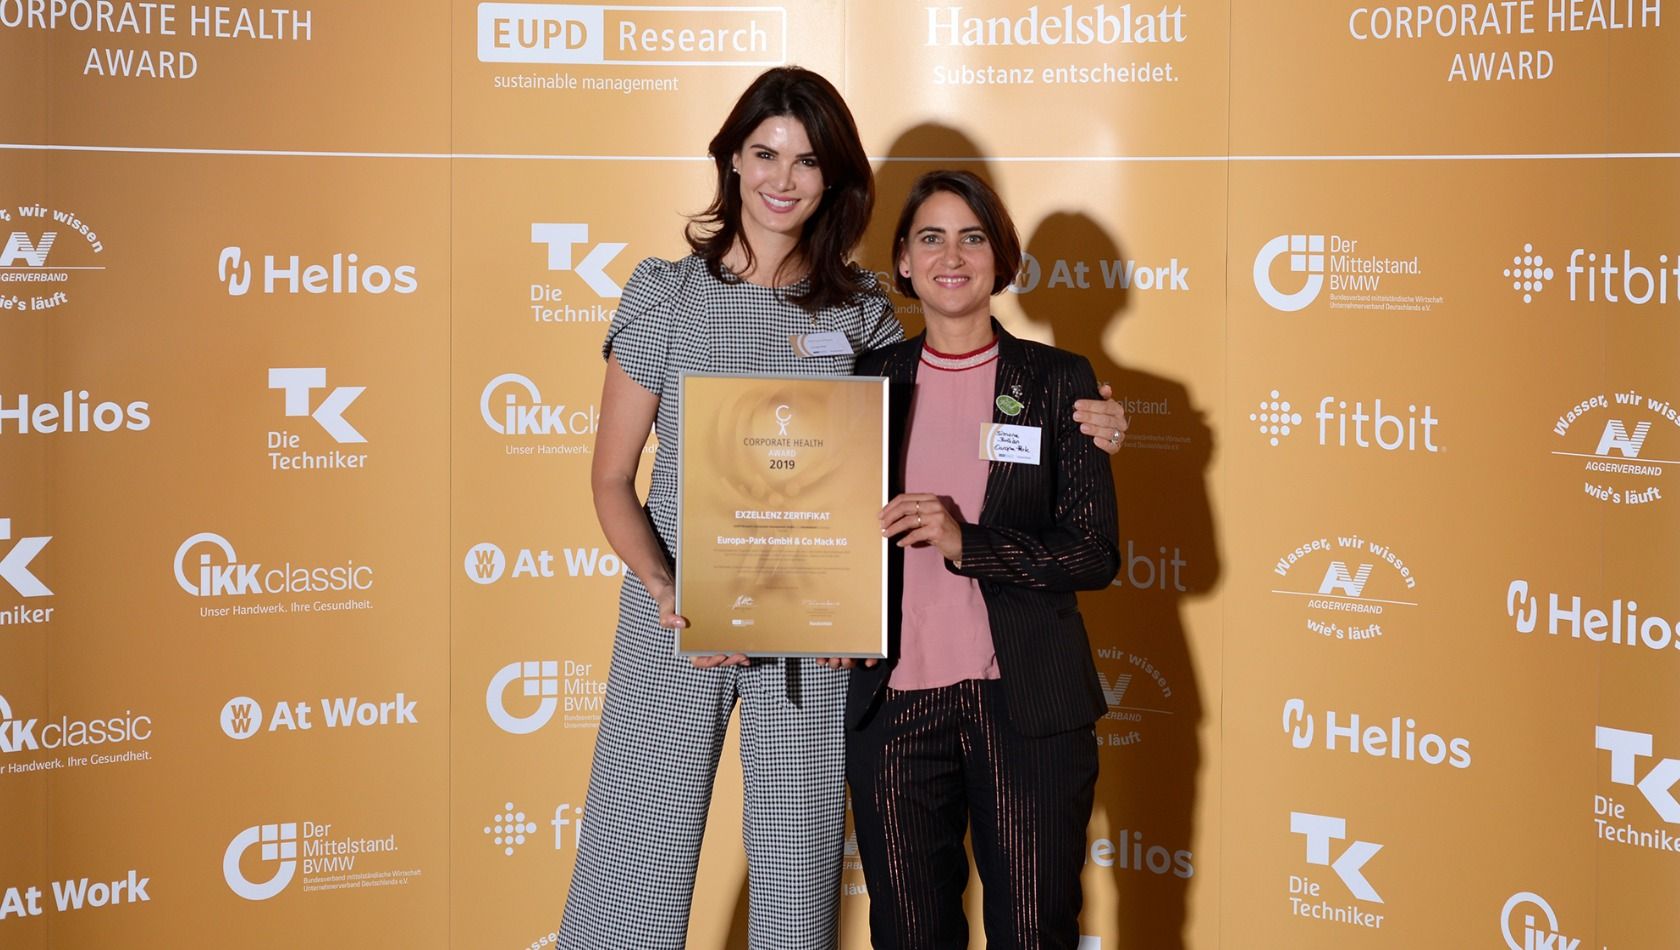 Europa-Park Award betriebliches Gesundheitsmanagement